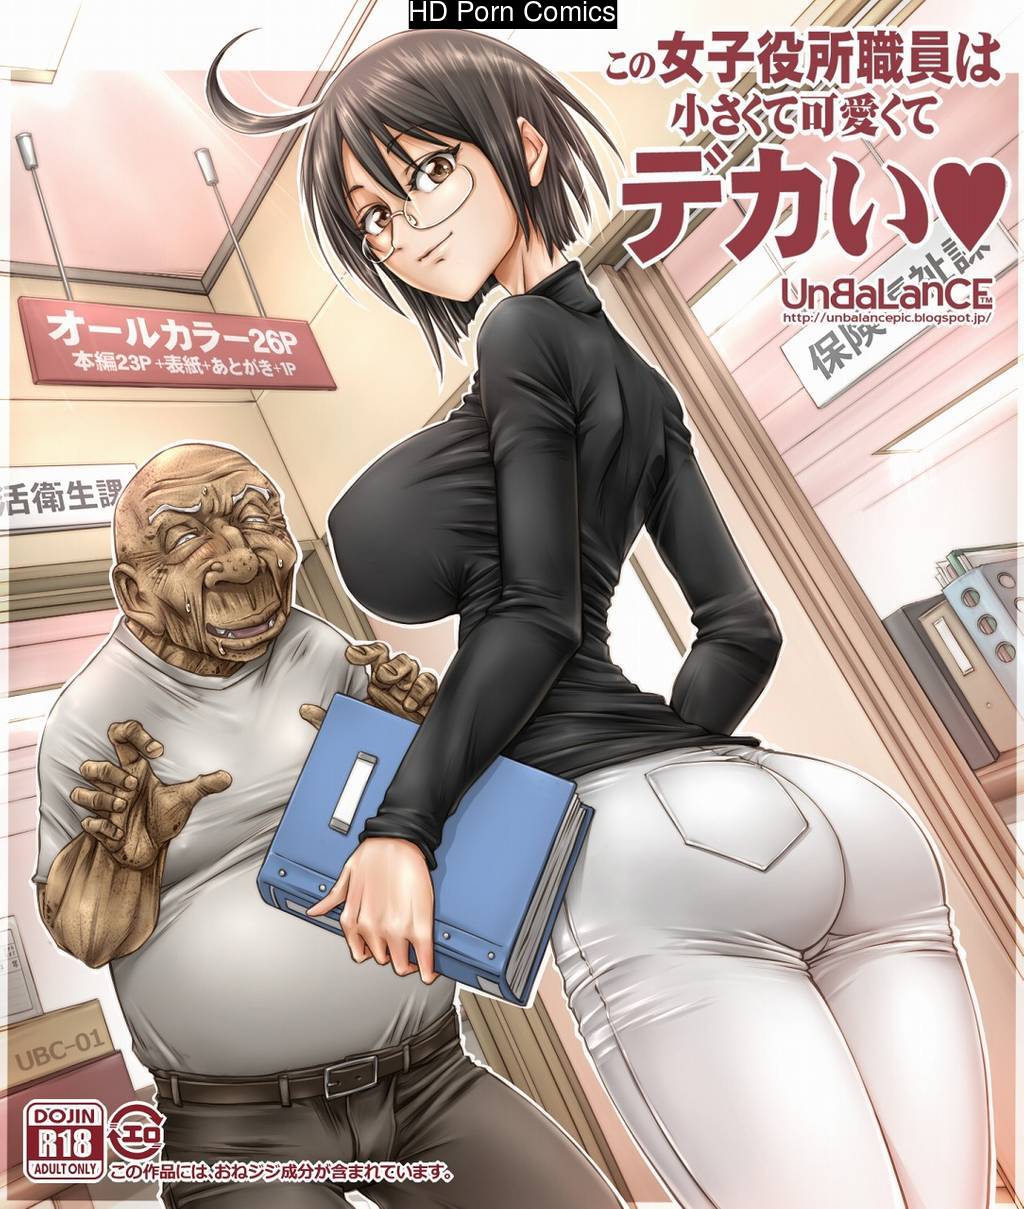 Kono Joshi Yakusho Shokuin wa Chiisakute Kawaikute Dekai comic porn | HD Porn  Comics